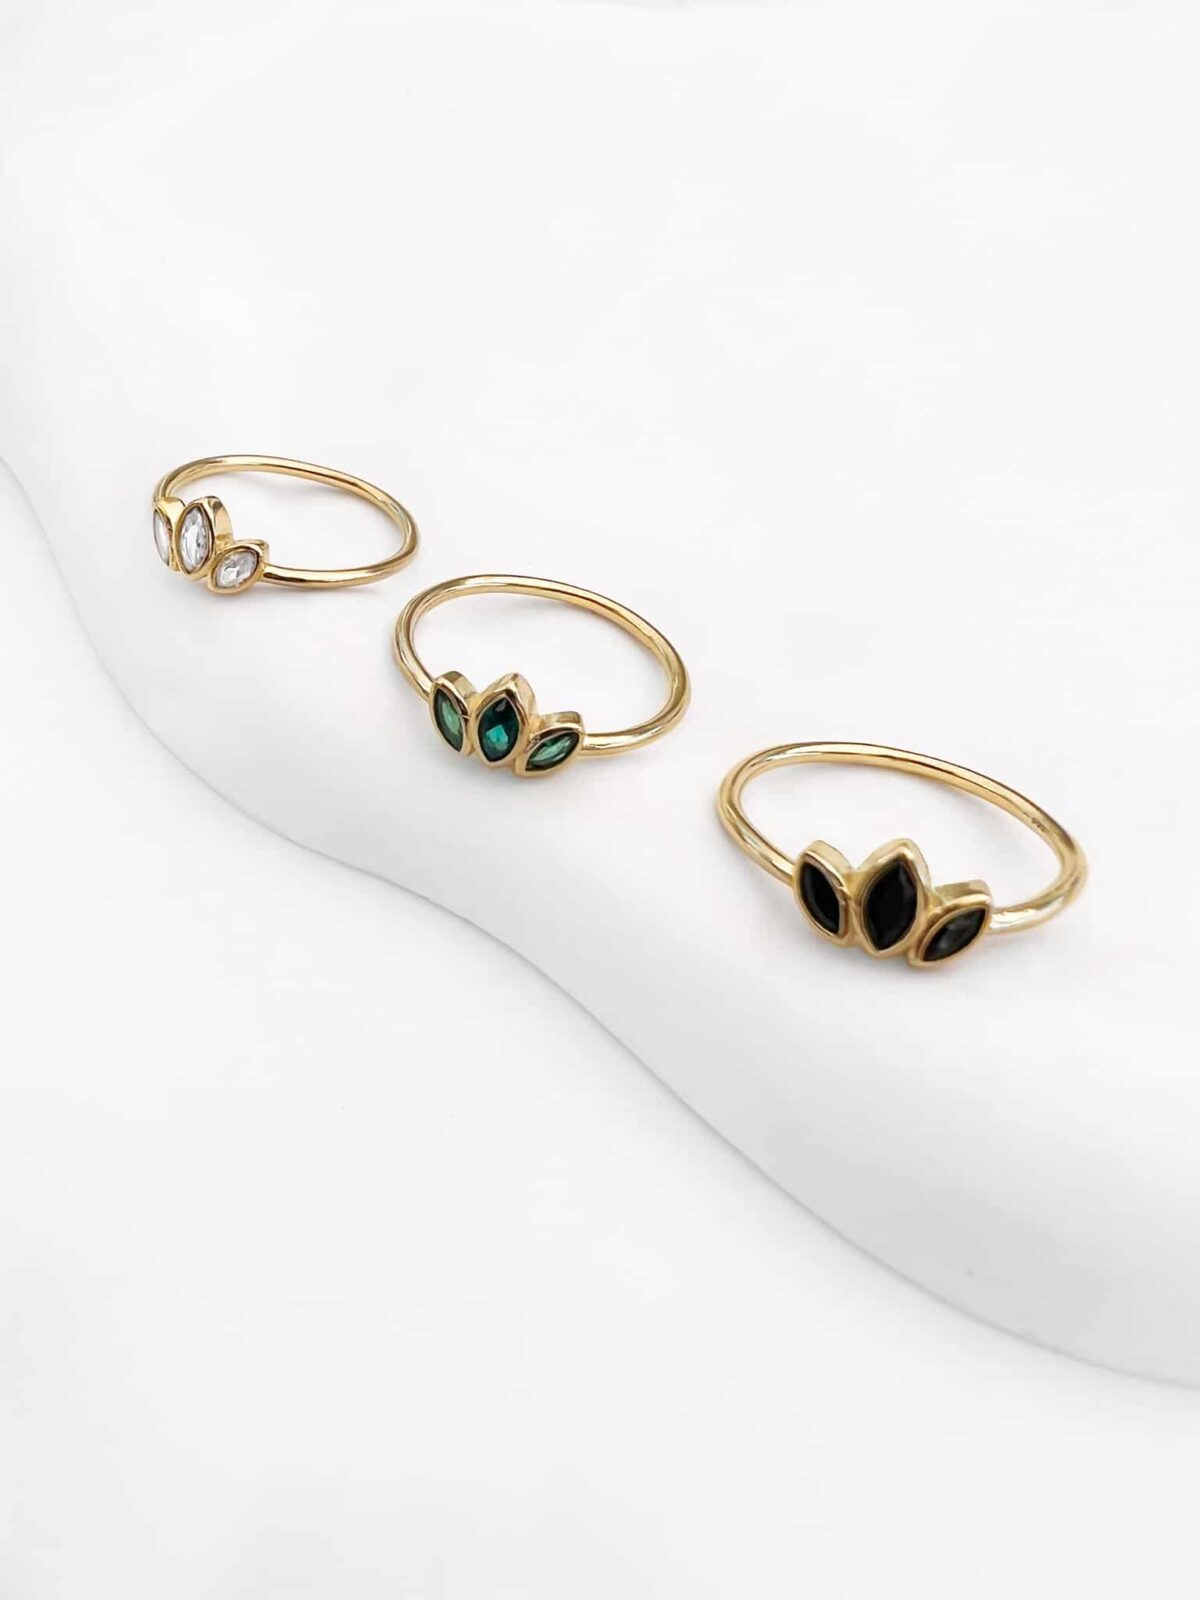 טבעת לוטוס, טבעת זהב לוטוס, טבעת לוטוס משובץ, טבעת לוטוס צבעונית, טבעת לוטוס ירוקה, טבעת לוטוס שחורה, טבעת לוטוס לבנה, טבעת לוטוס זרקונים,